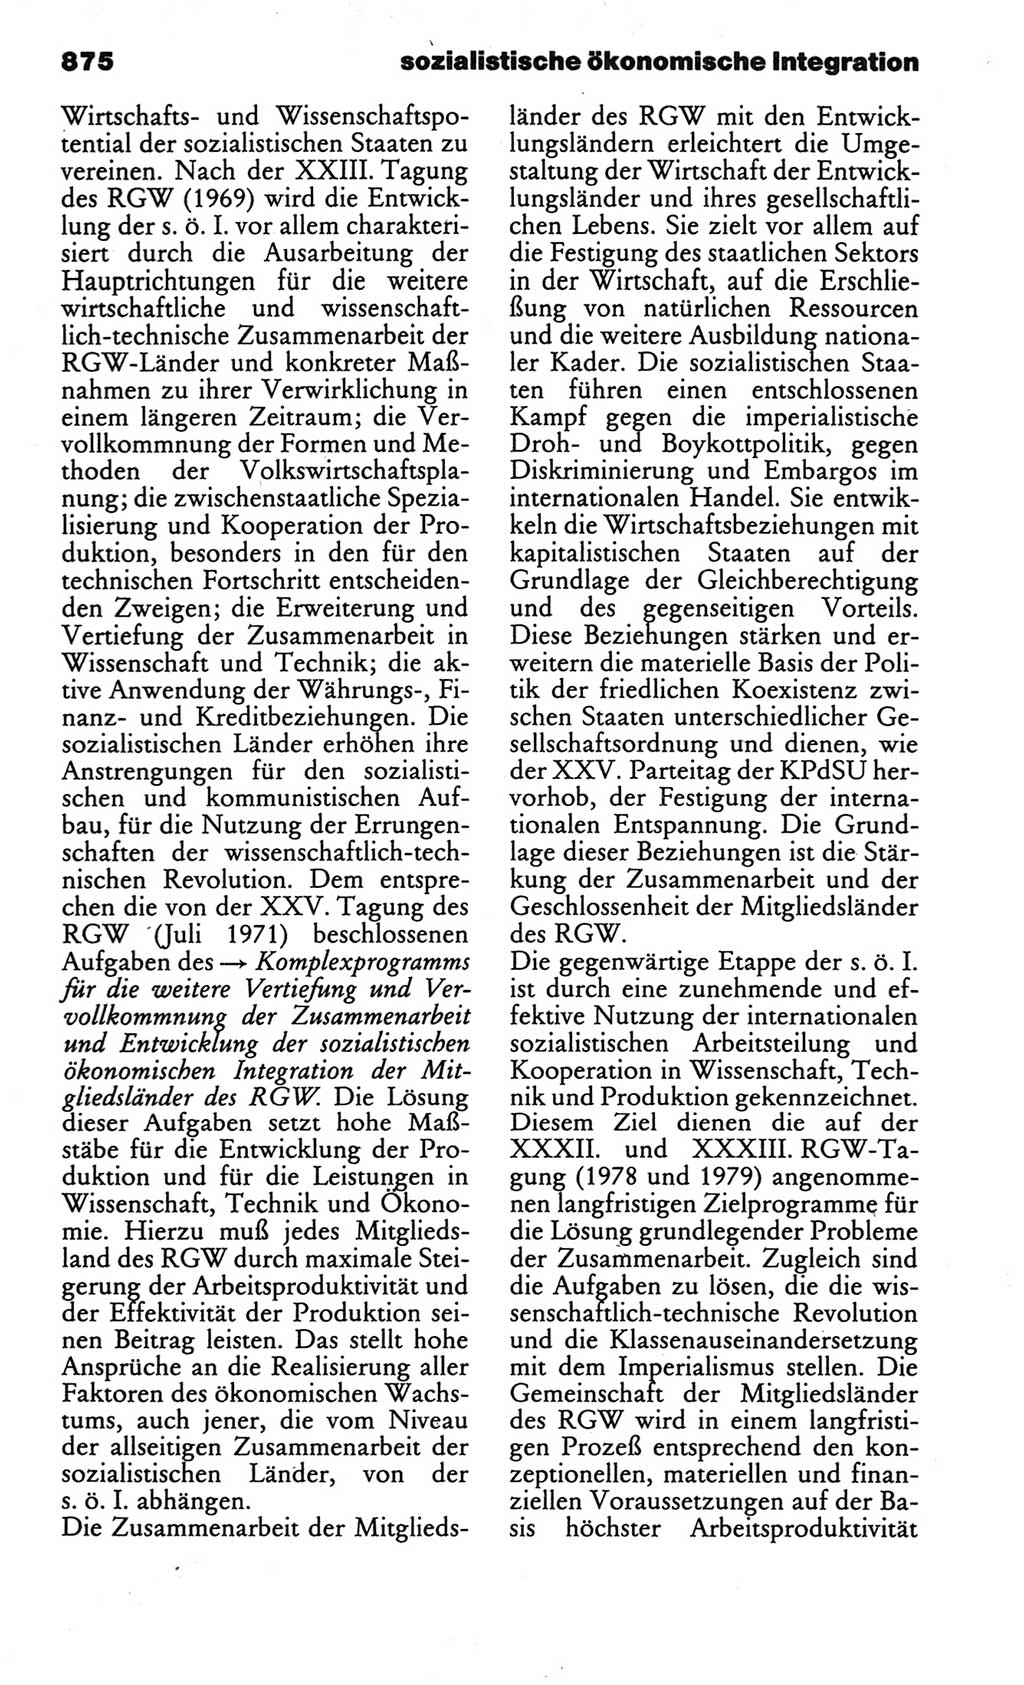 Kleines politisches Wörterbuch [Deutsche Demokratische Republik (DDR)] 1986, Seite 875 (Kl. pol. Wb. DDR 1986, S. 875)